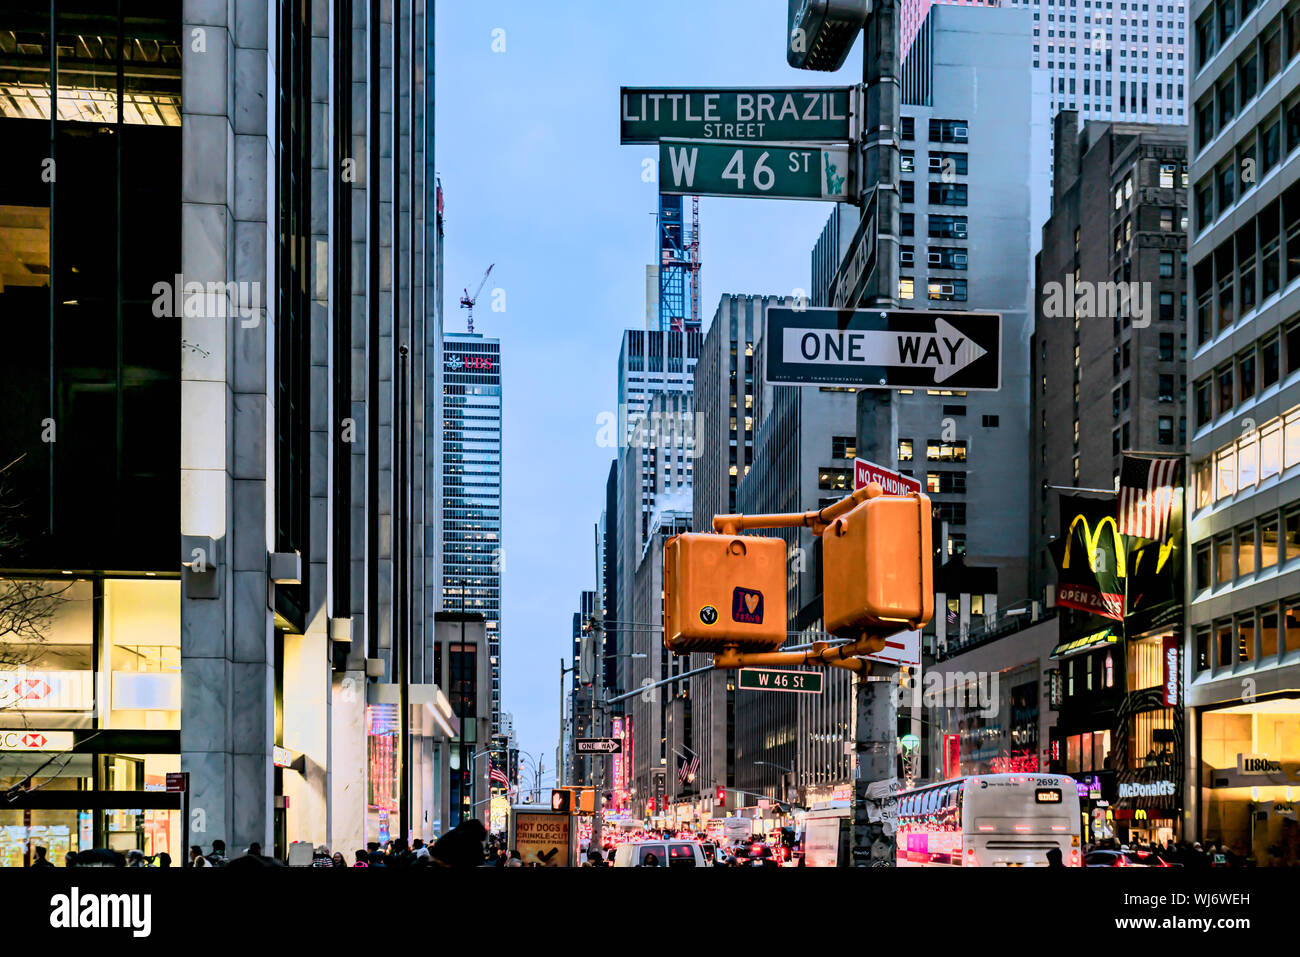 New York City, NY, USA - Dezember, 2018 - wenig Brasilien, Nachbarschaft mit brasilianischen Unternehmen und Restaurants, an der West 46th Street zwisch Stockfoto